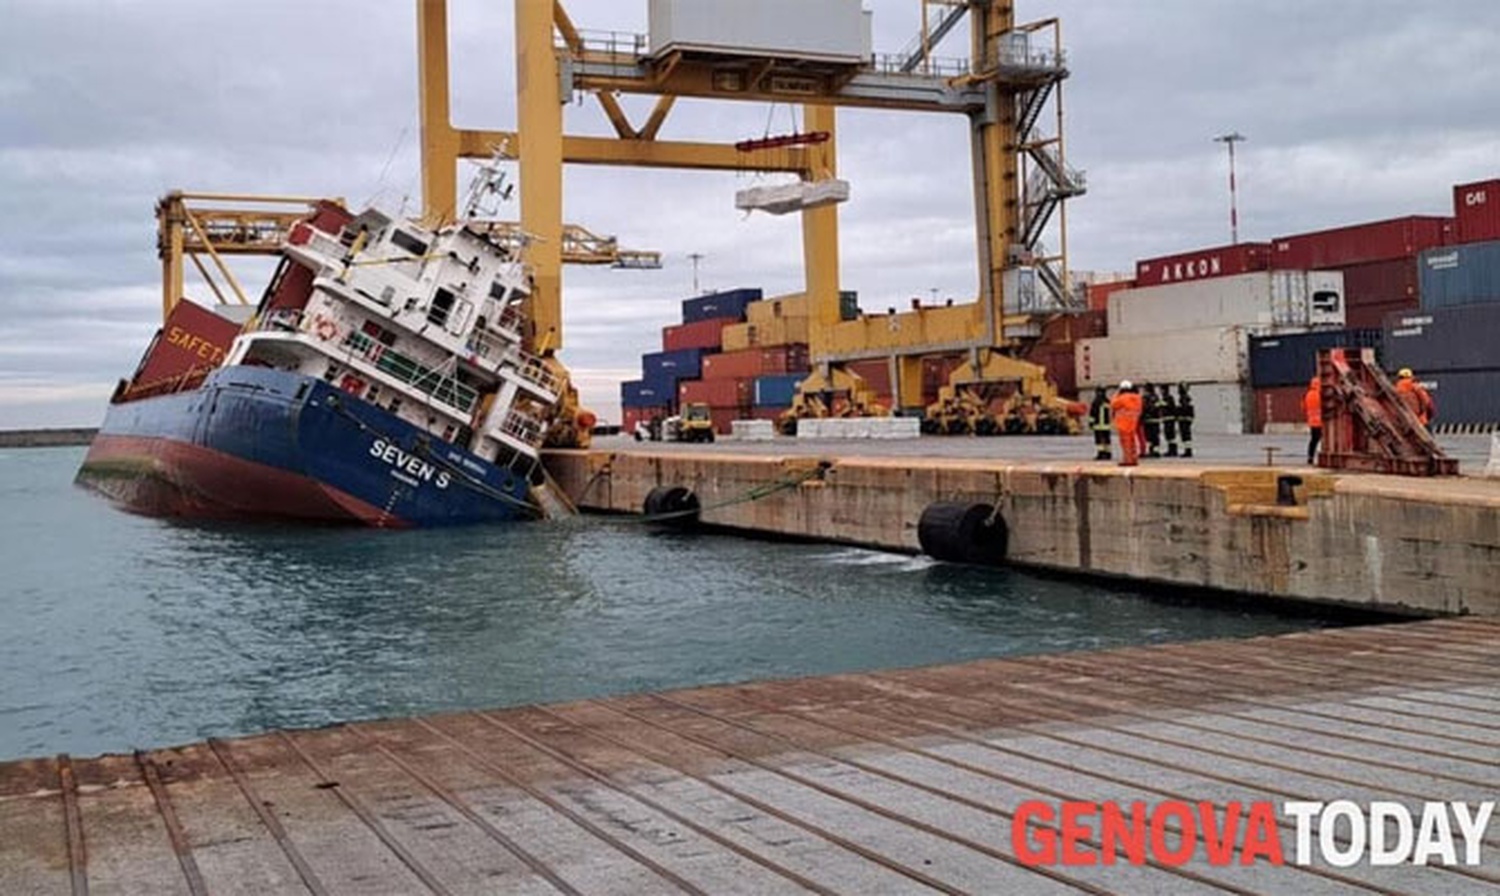 Φορτηγό πλοίο απώλεσε την ευστάθεια του και ανατράπηκε στο λιμάνι της Τζένοα στην Ιταλία (Φωτο) - e-Nautilia.gr | Το Ελληνικό Portal για την Ναυτιλία. Τελευταία νέα, άρθρα, Οπτικοακουστικό Υλικό